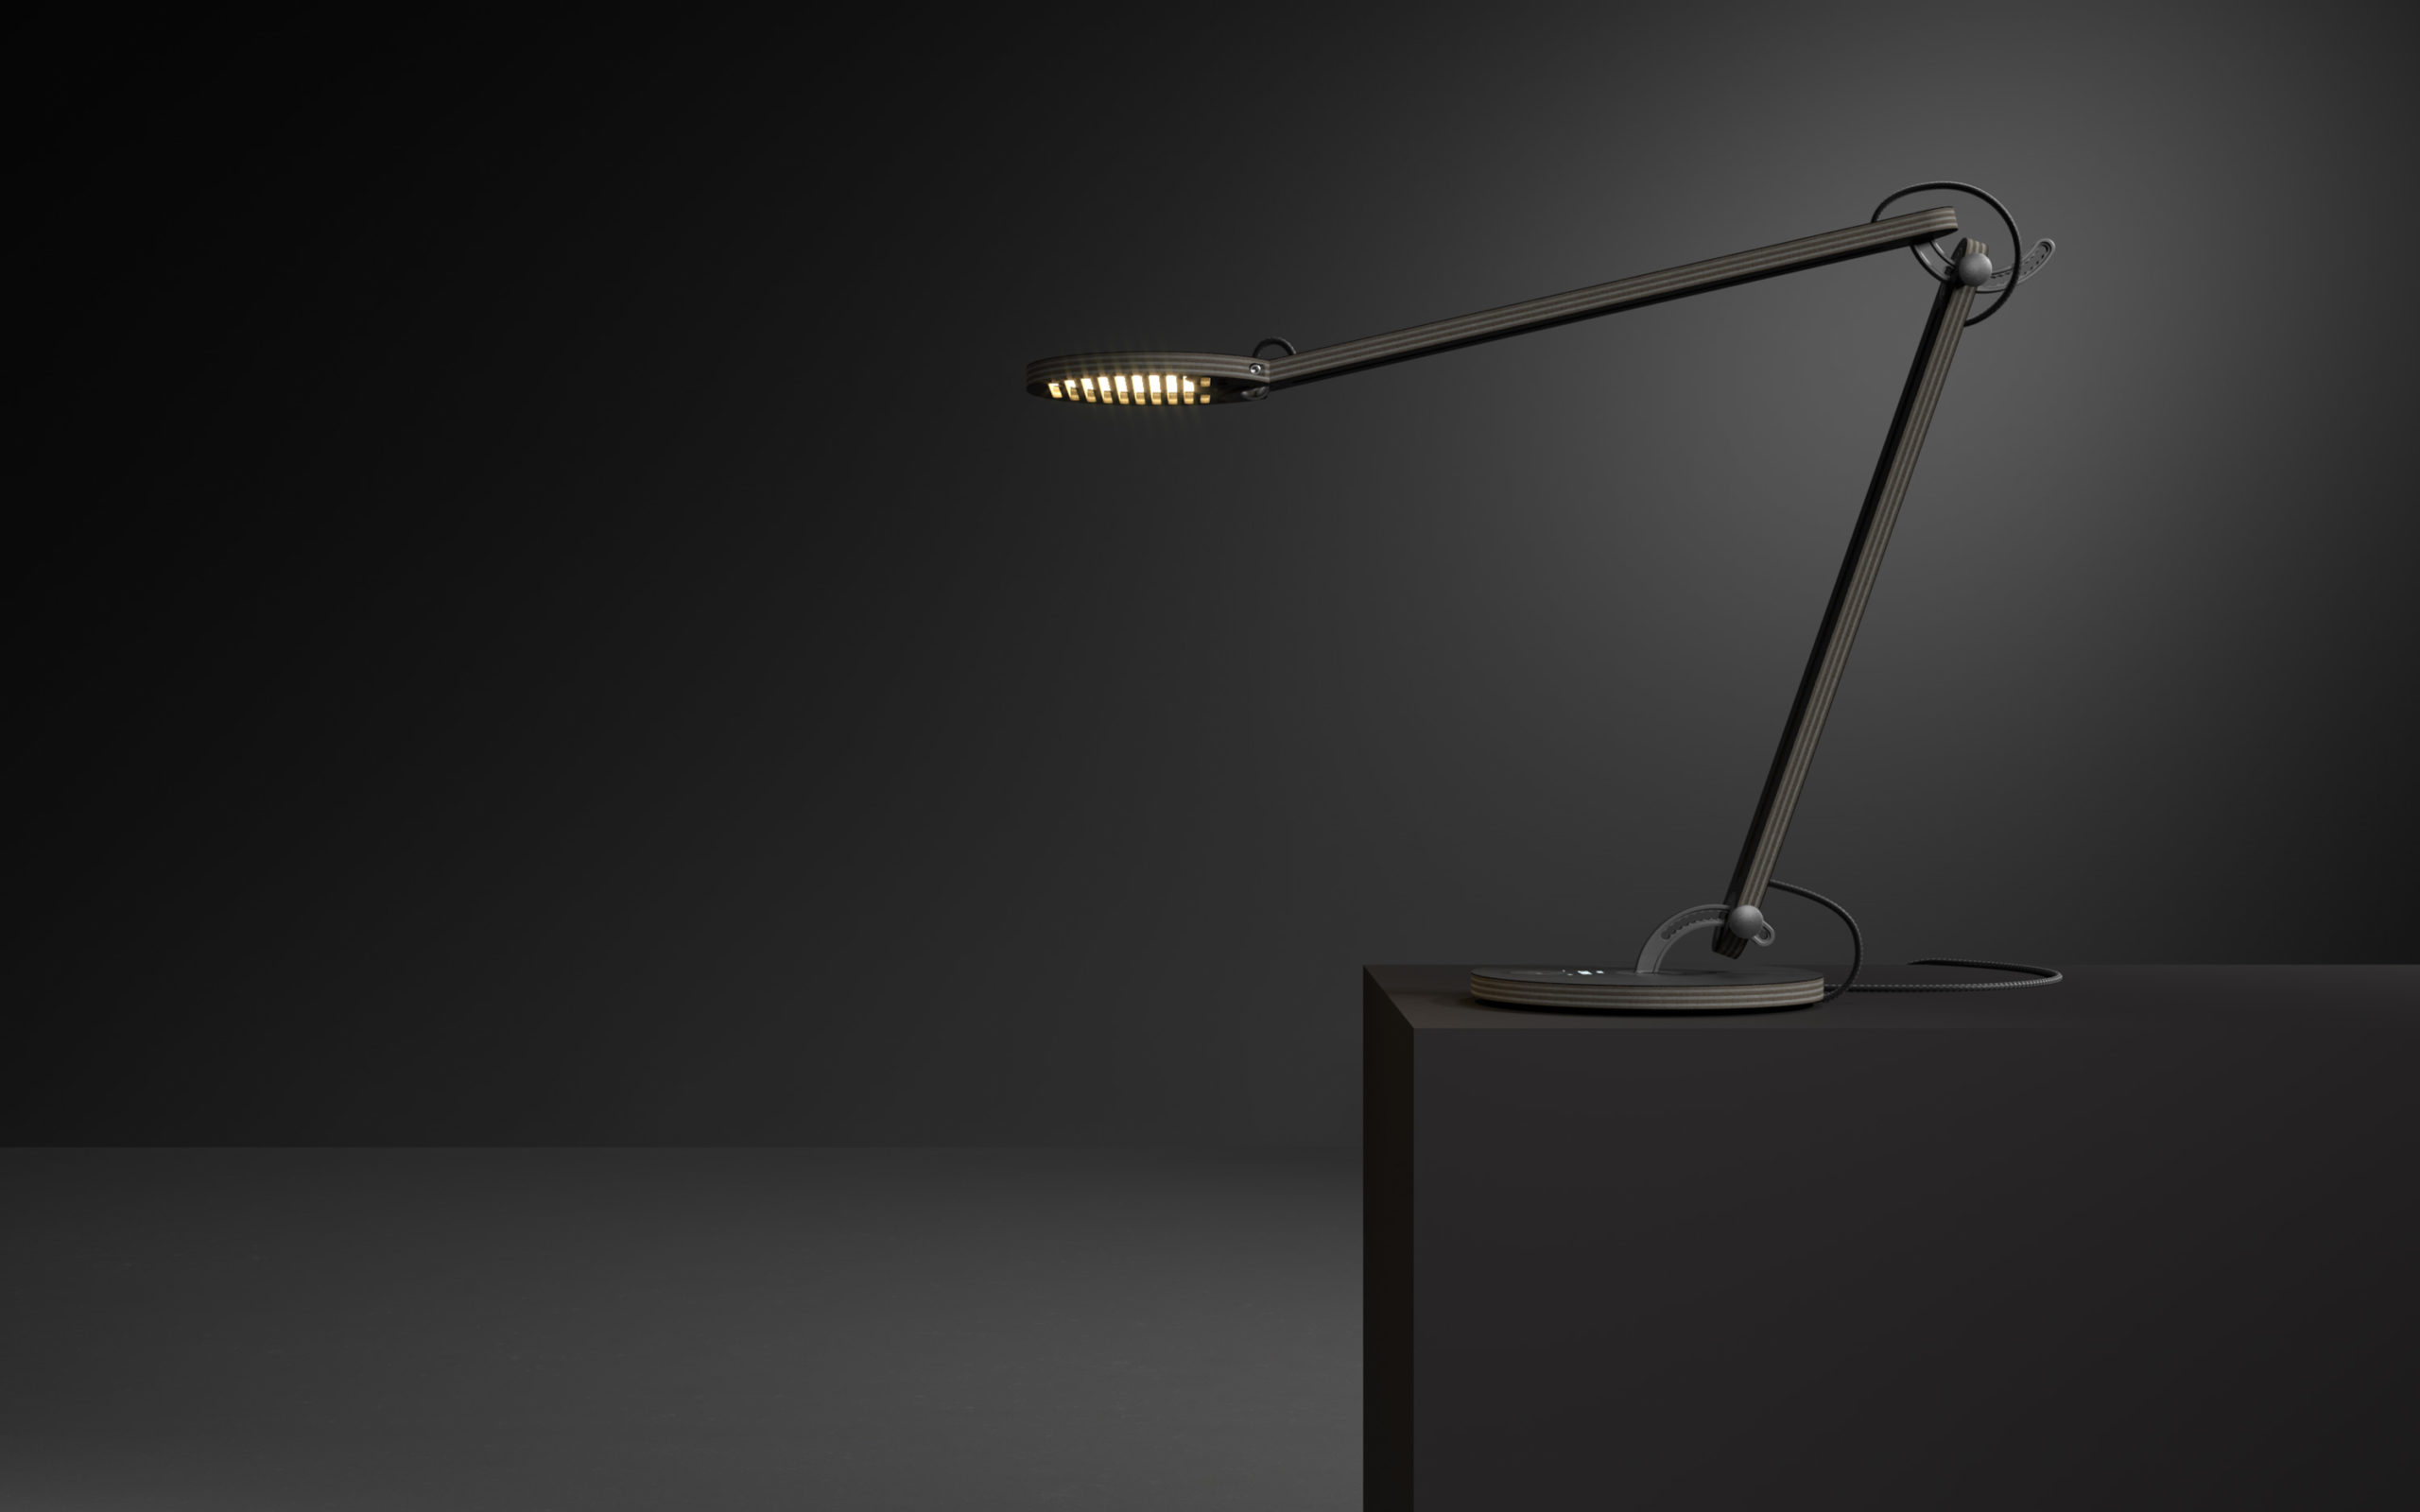 Hylta Desktop Lamp